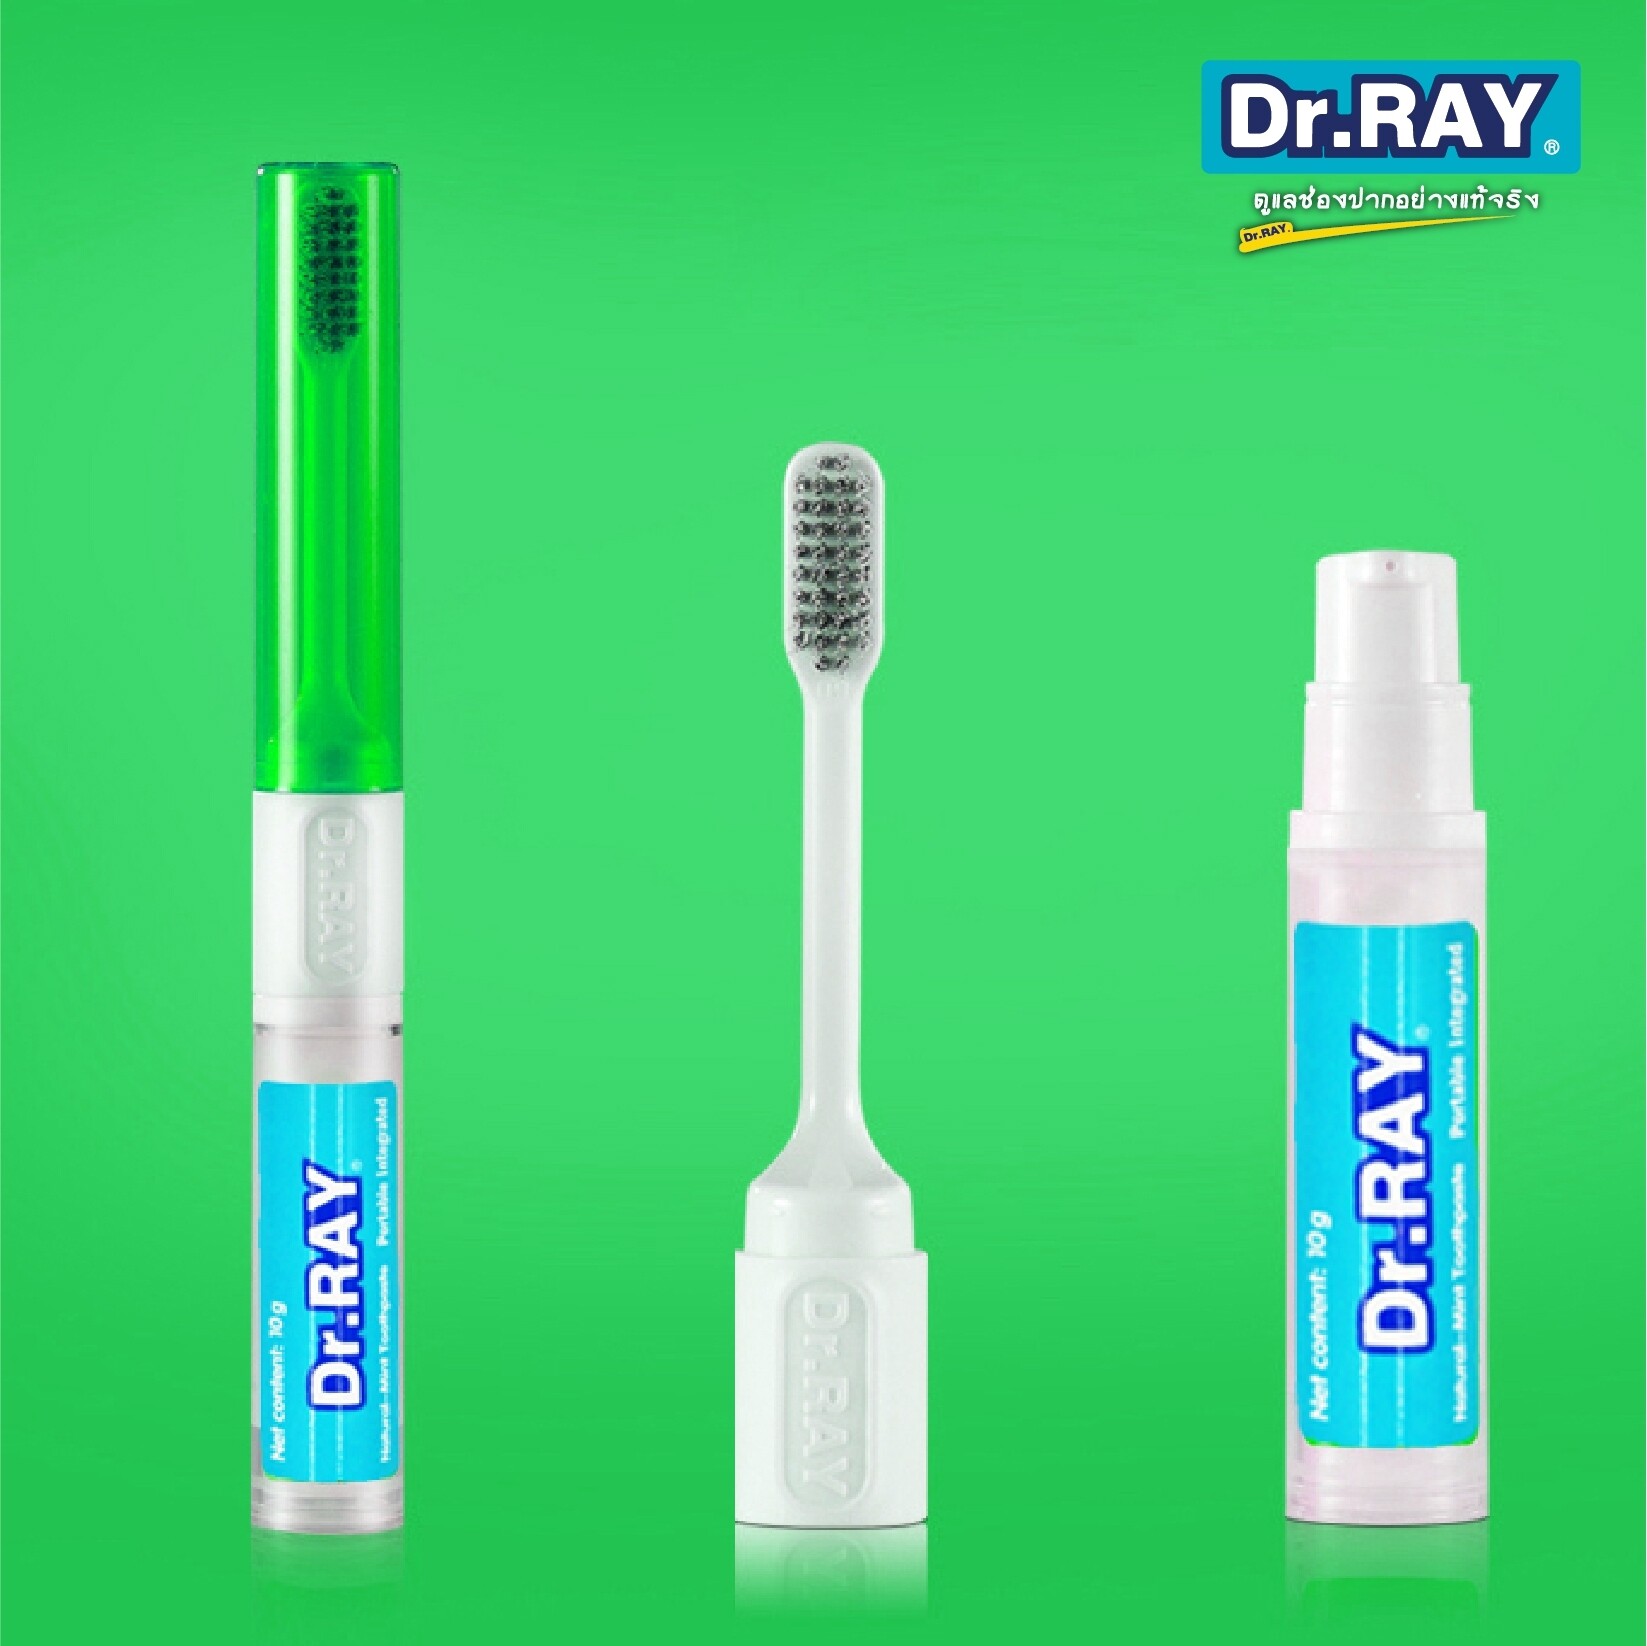 Dr.Ray แปรงสีฟัน ดอกเตอร์ เรย์ แบบพกพา 2 in 1 สำหรับเดินทางหรือใช้ที่ทำงาน สะดวกในการใช้ รุ่น PORTABLE INTEGRATED D82(แพ็ค 1 ชิ้น#ดร.เรย์)